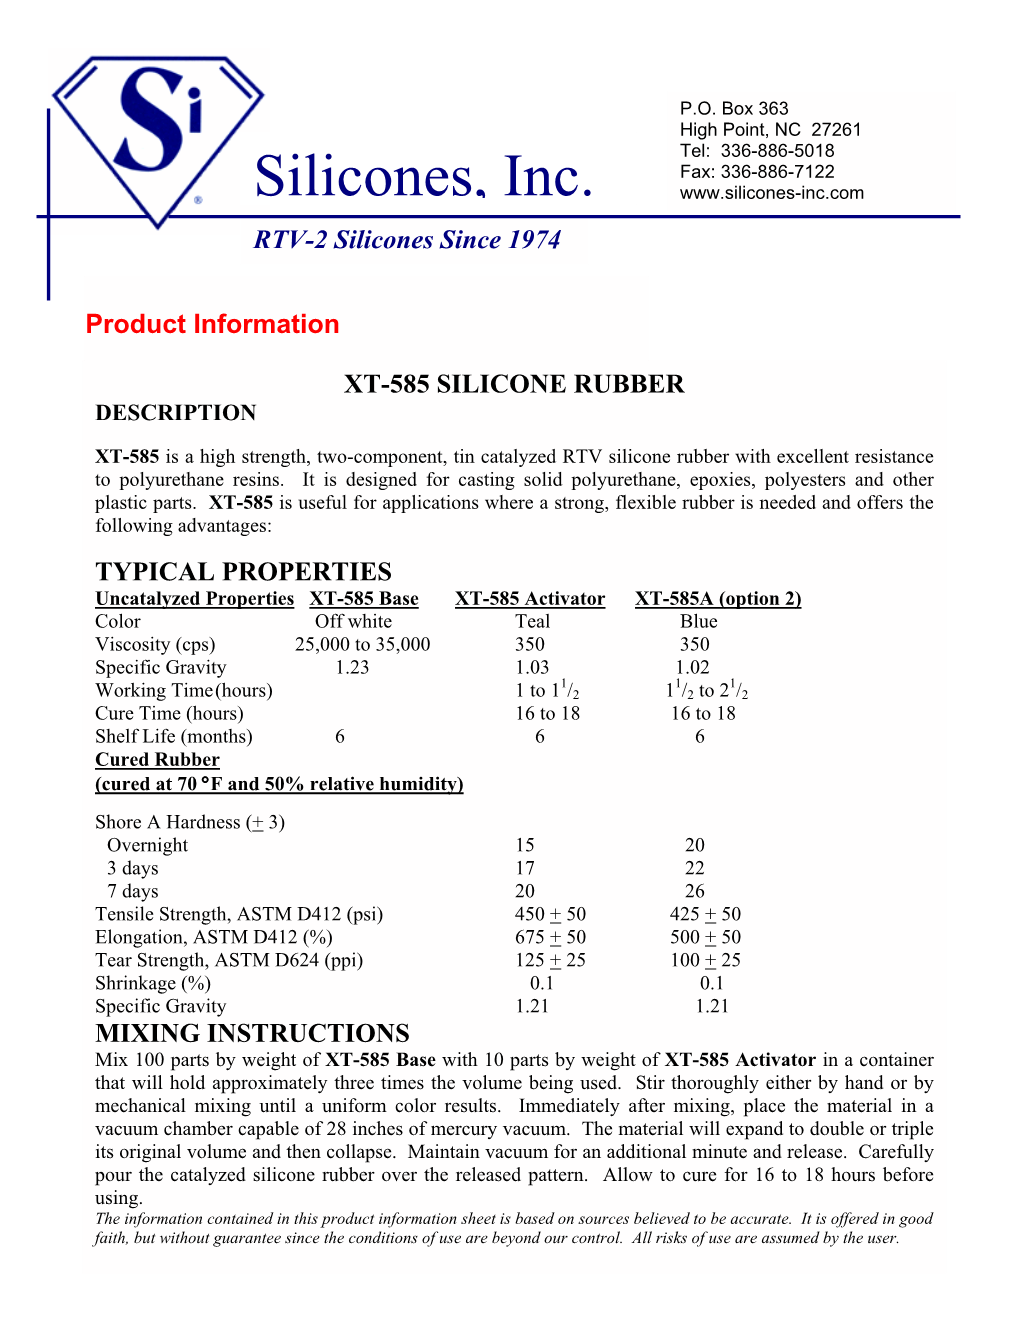 Xt-585 Silicone Rubber Description